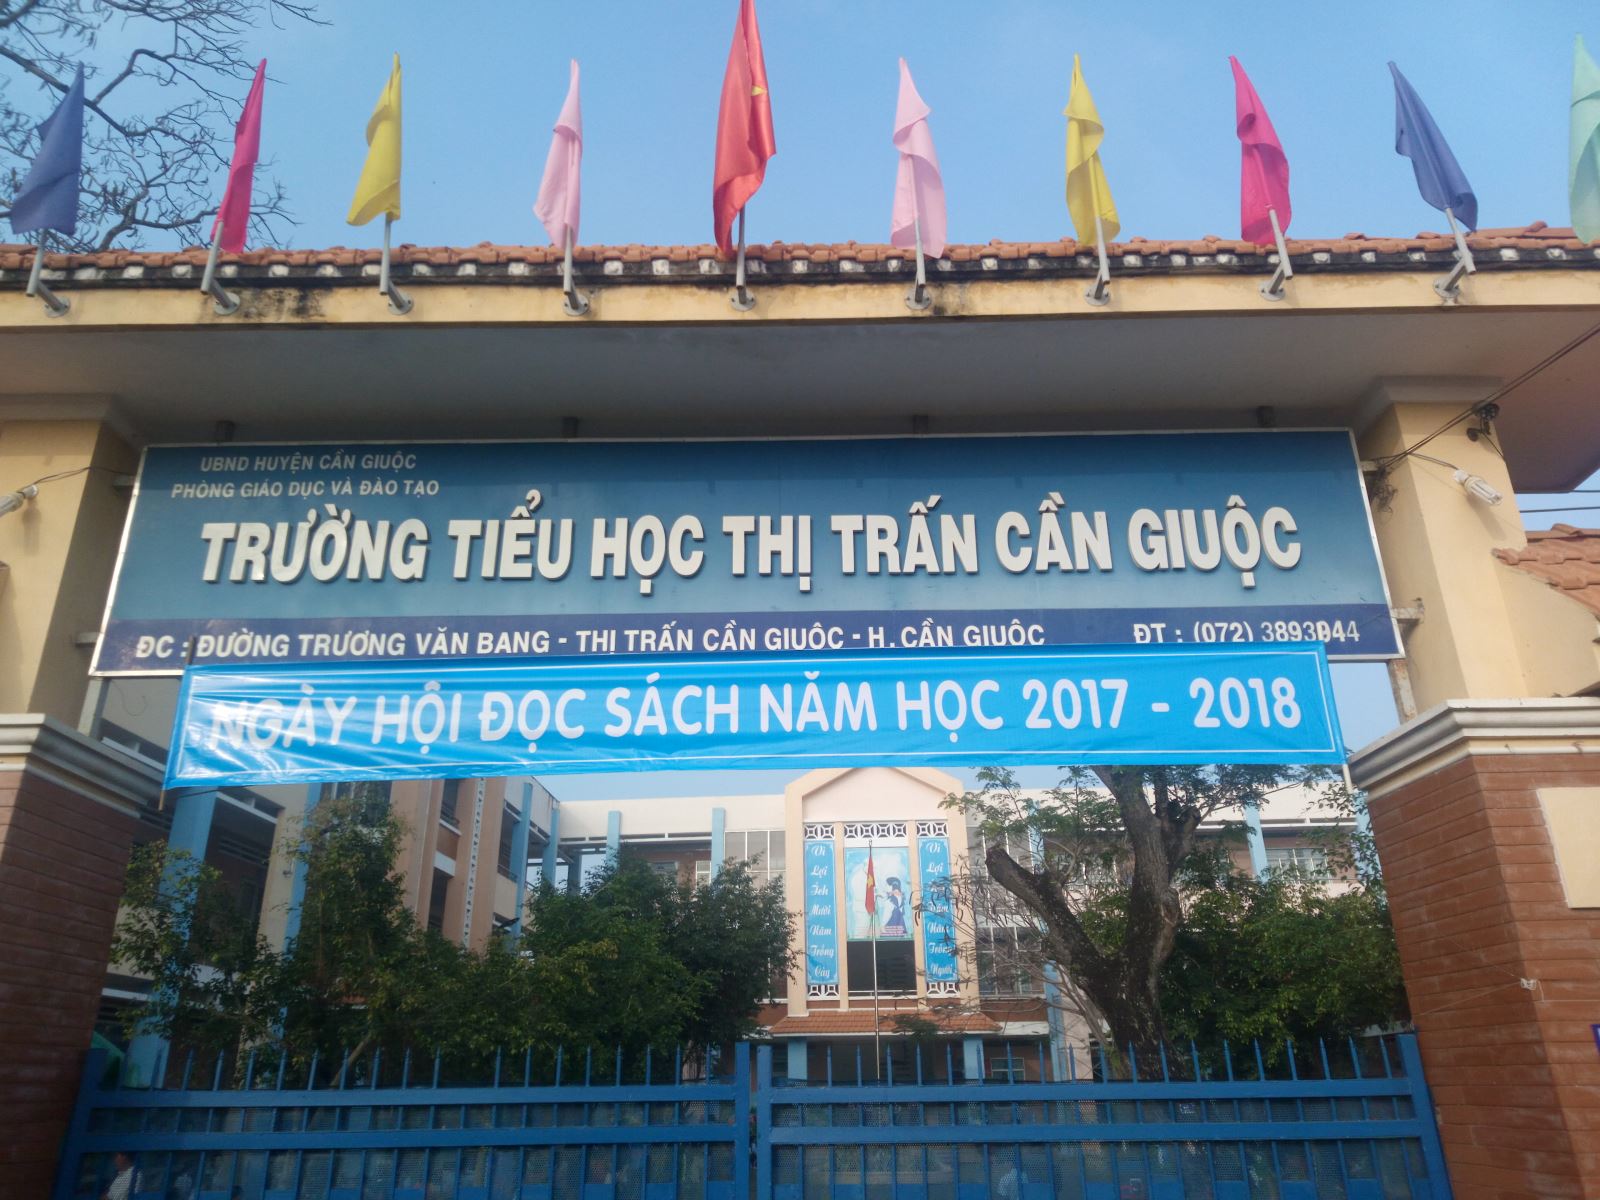 Trường Tiểu học Thị trấn Cần giuộc tổ chức Ngày đọc sách năm học 2017-2018